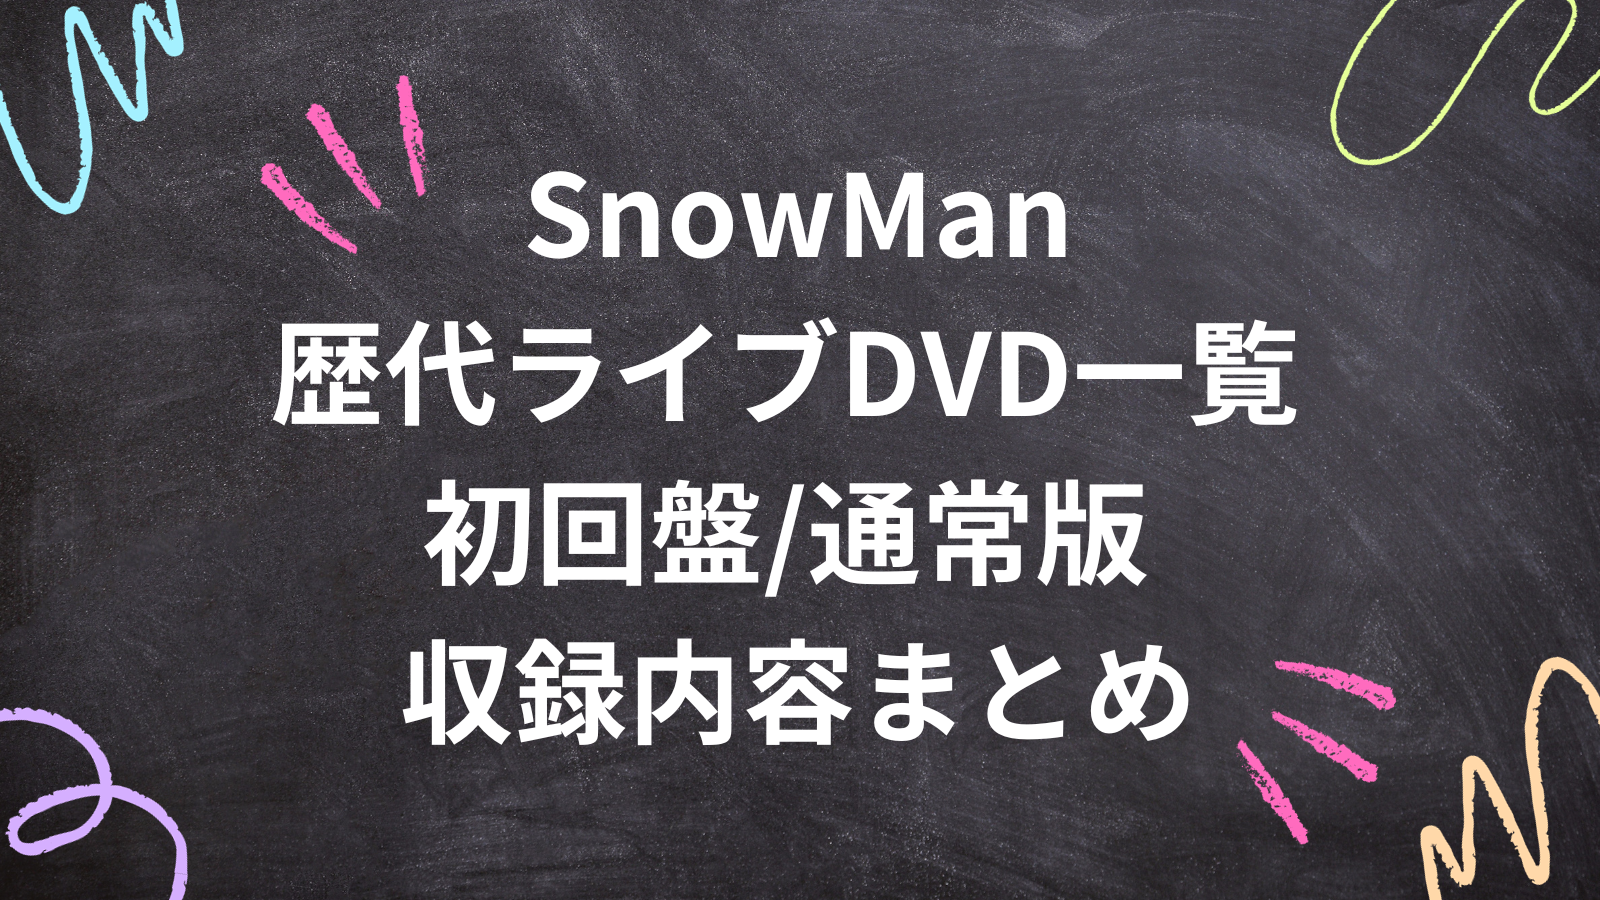 SnowMan歴代ライブDVD一覧 初回盤/通常版 収録内容まとめ | すのサーチ